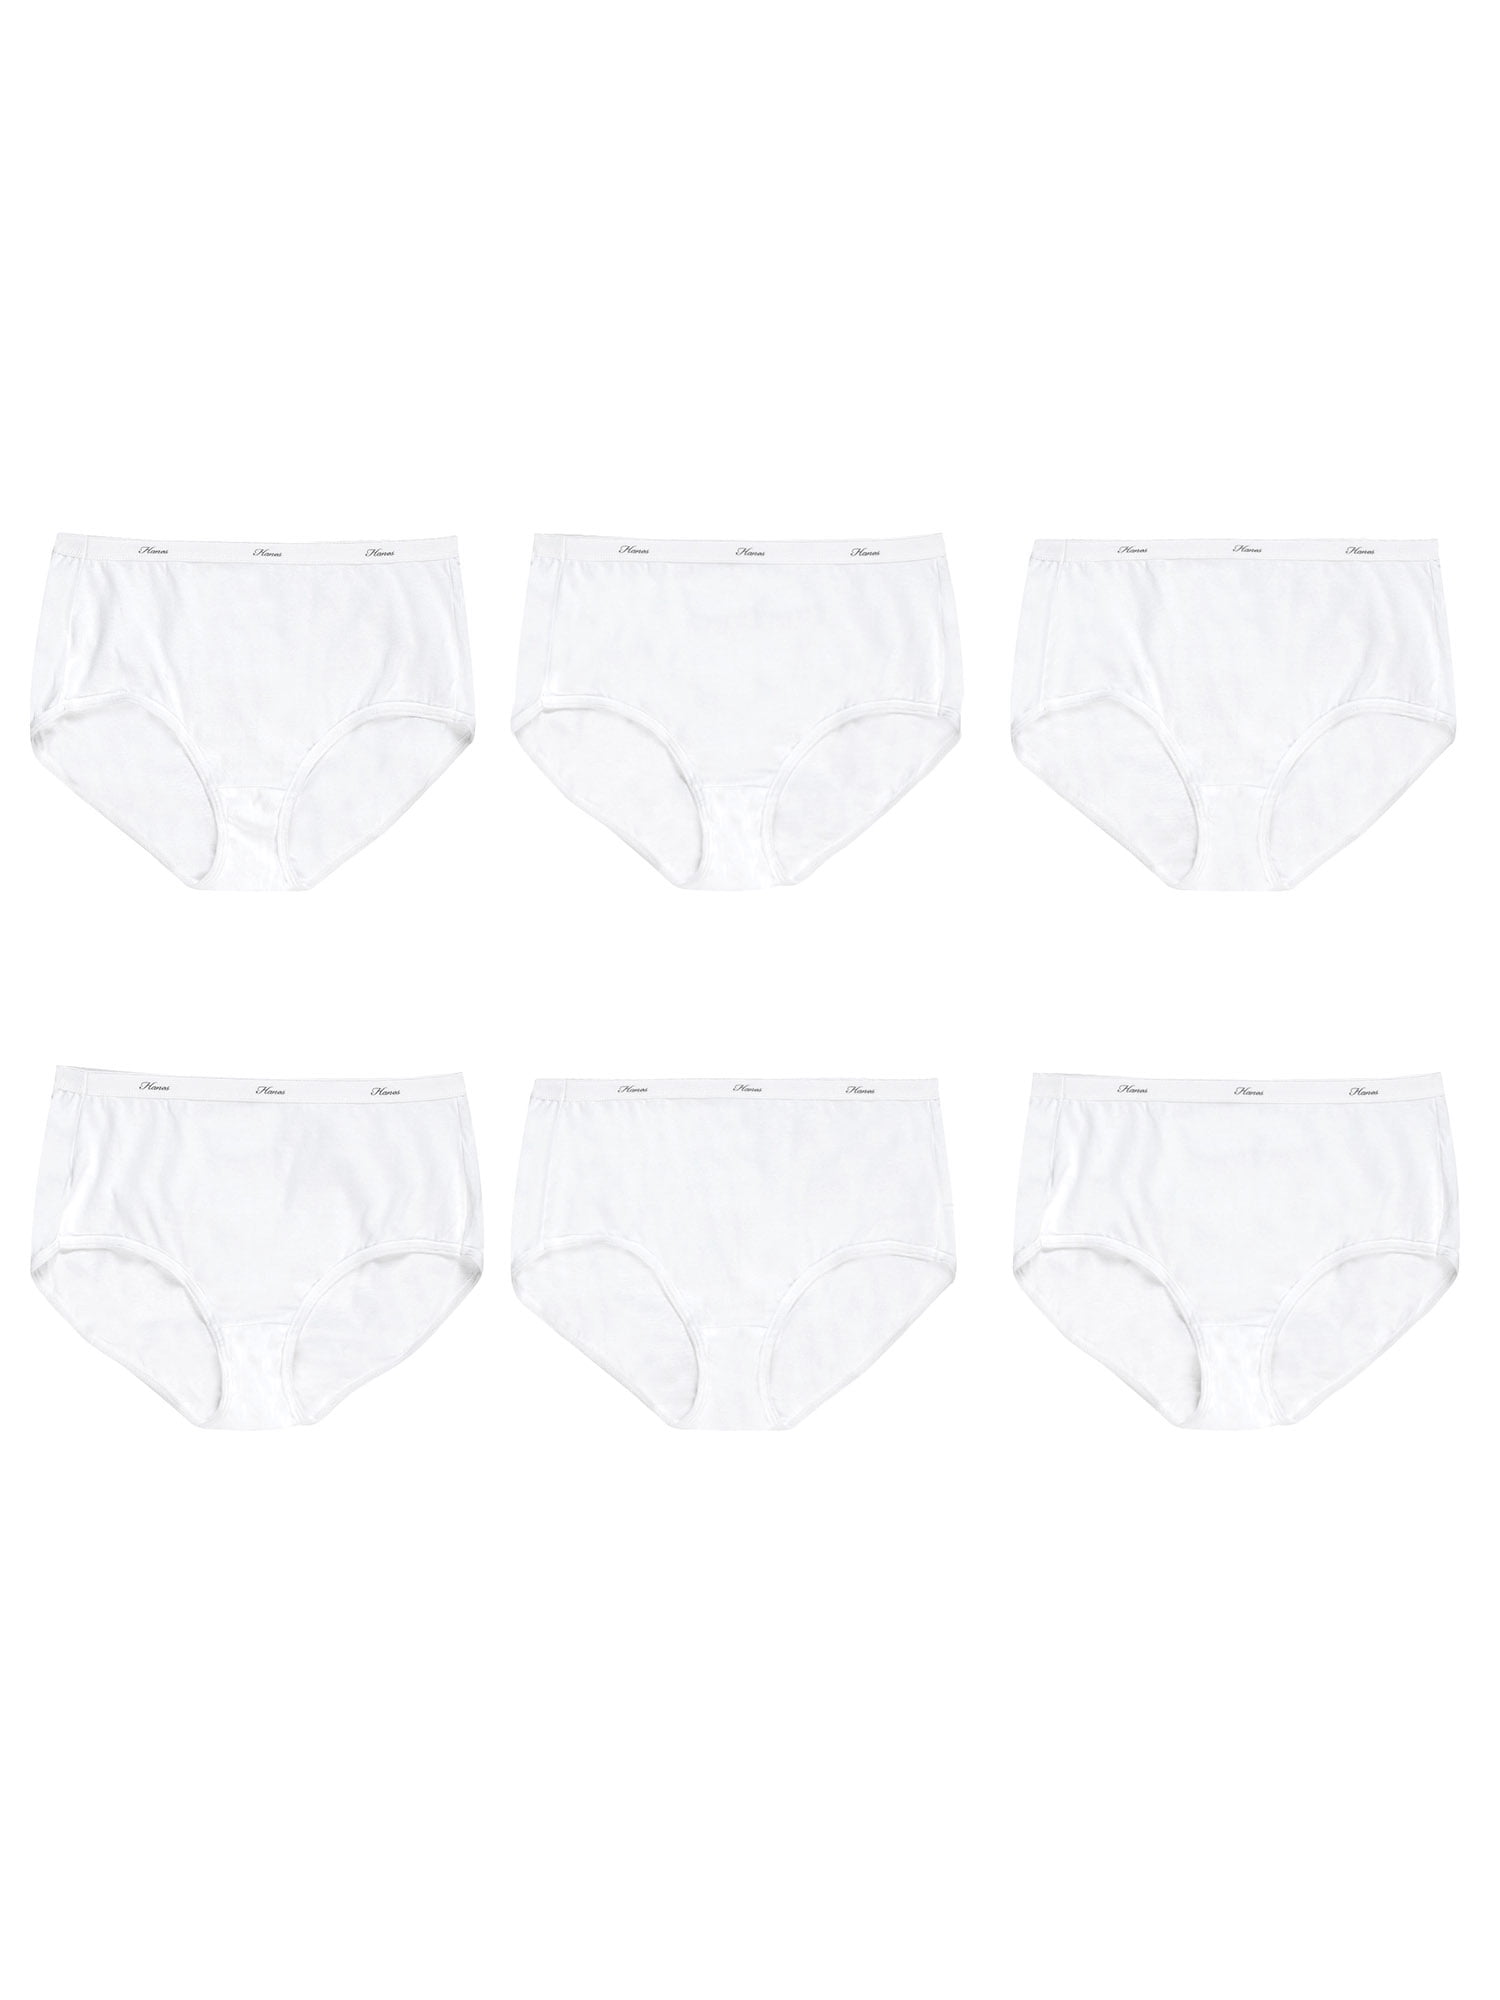 Photo 1 of Hanes Women's Cotton Brief Underwear, 10-Pack